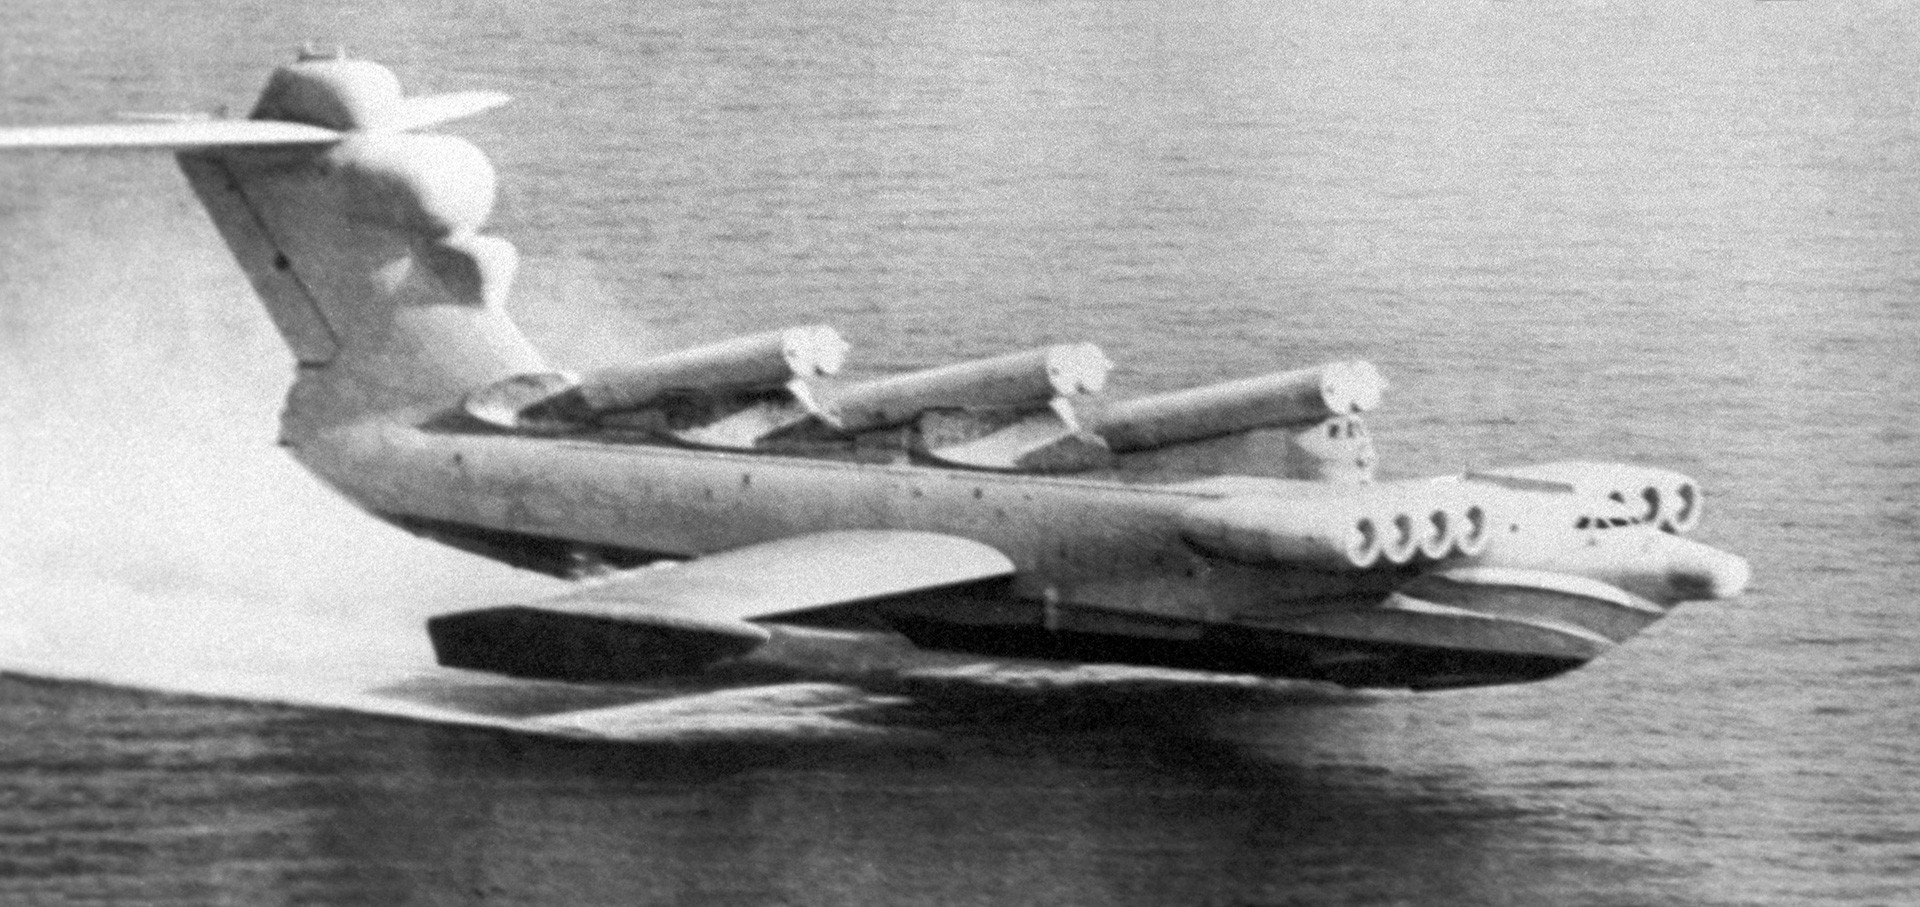 Sovjetski ekranoplan Lunj je bil oborožen s protiladijskimi manevrirnimi raketami P-270 Moskit, zato je bil nevaren za letalonosilke.